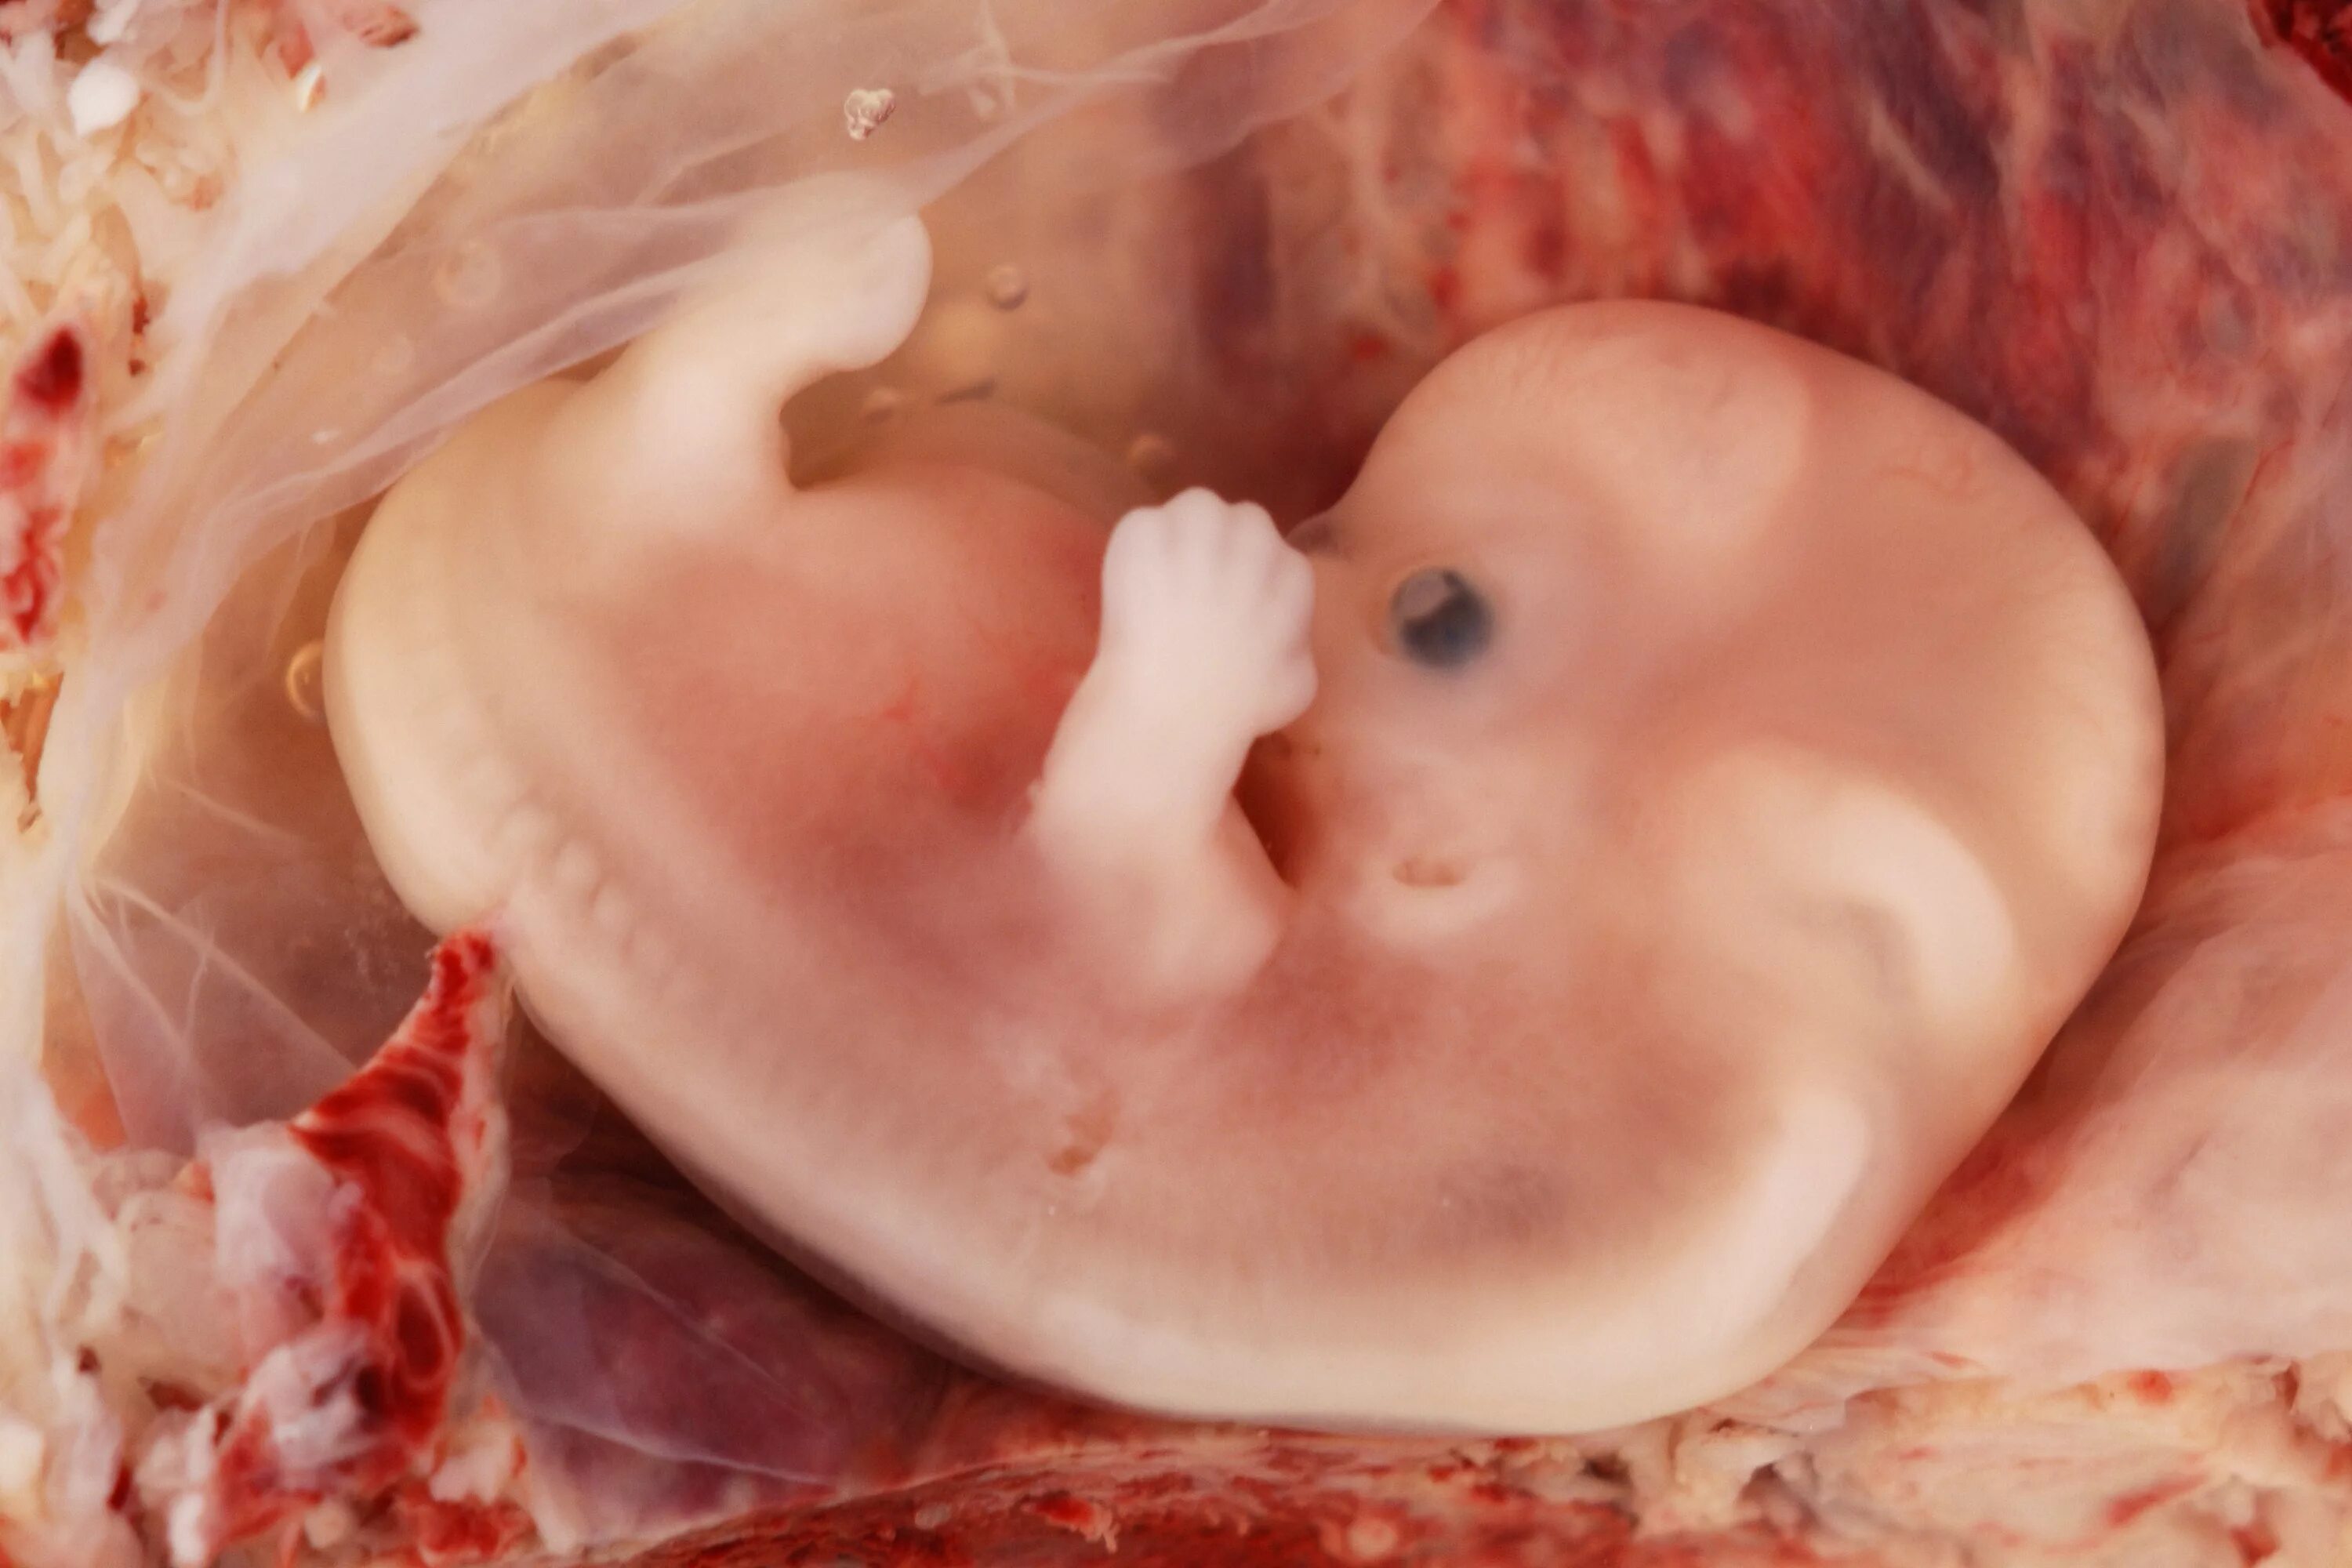 Эмбрион на 8 неделе беременности. Фото 8 недель беременности фото плода. Плод на 8 неделе беременности.